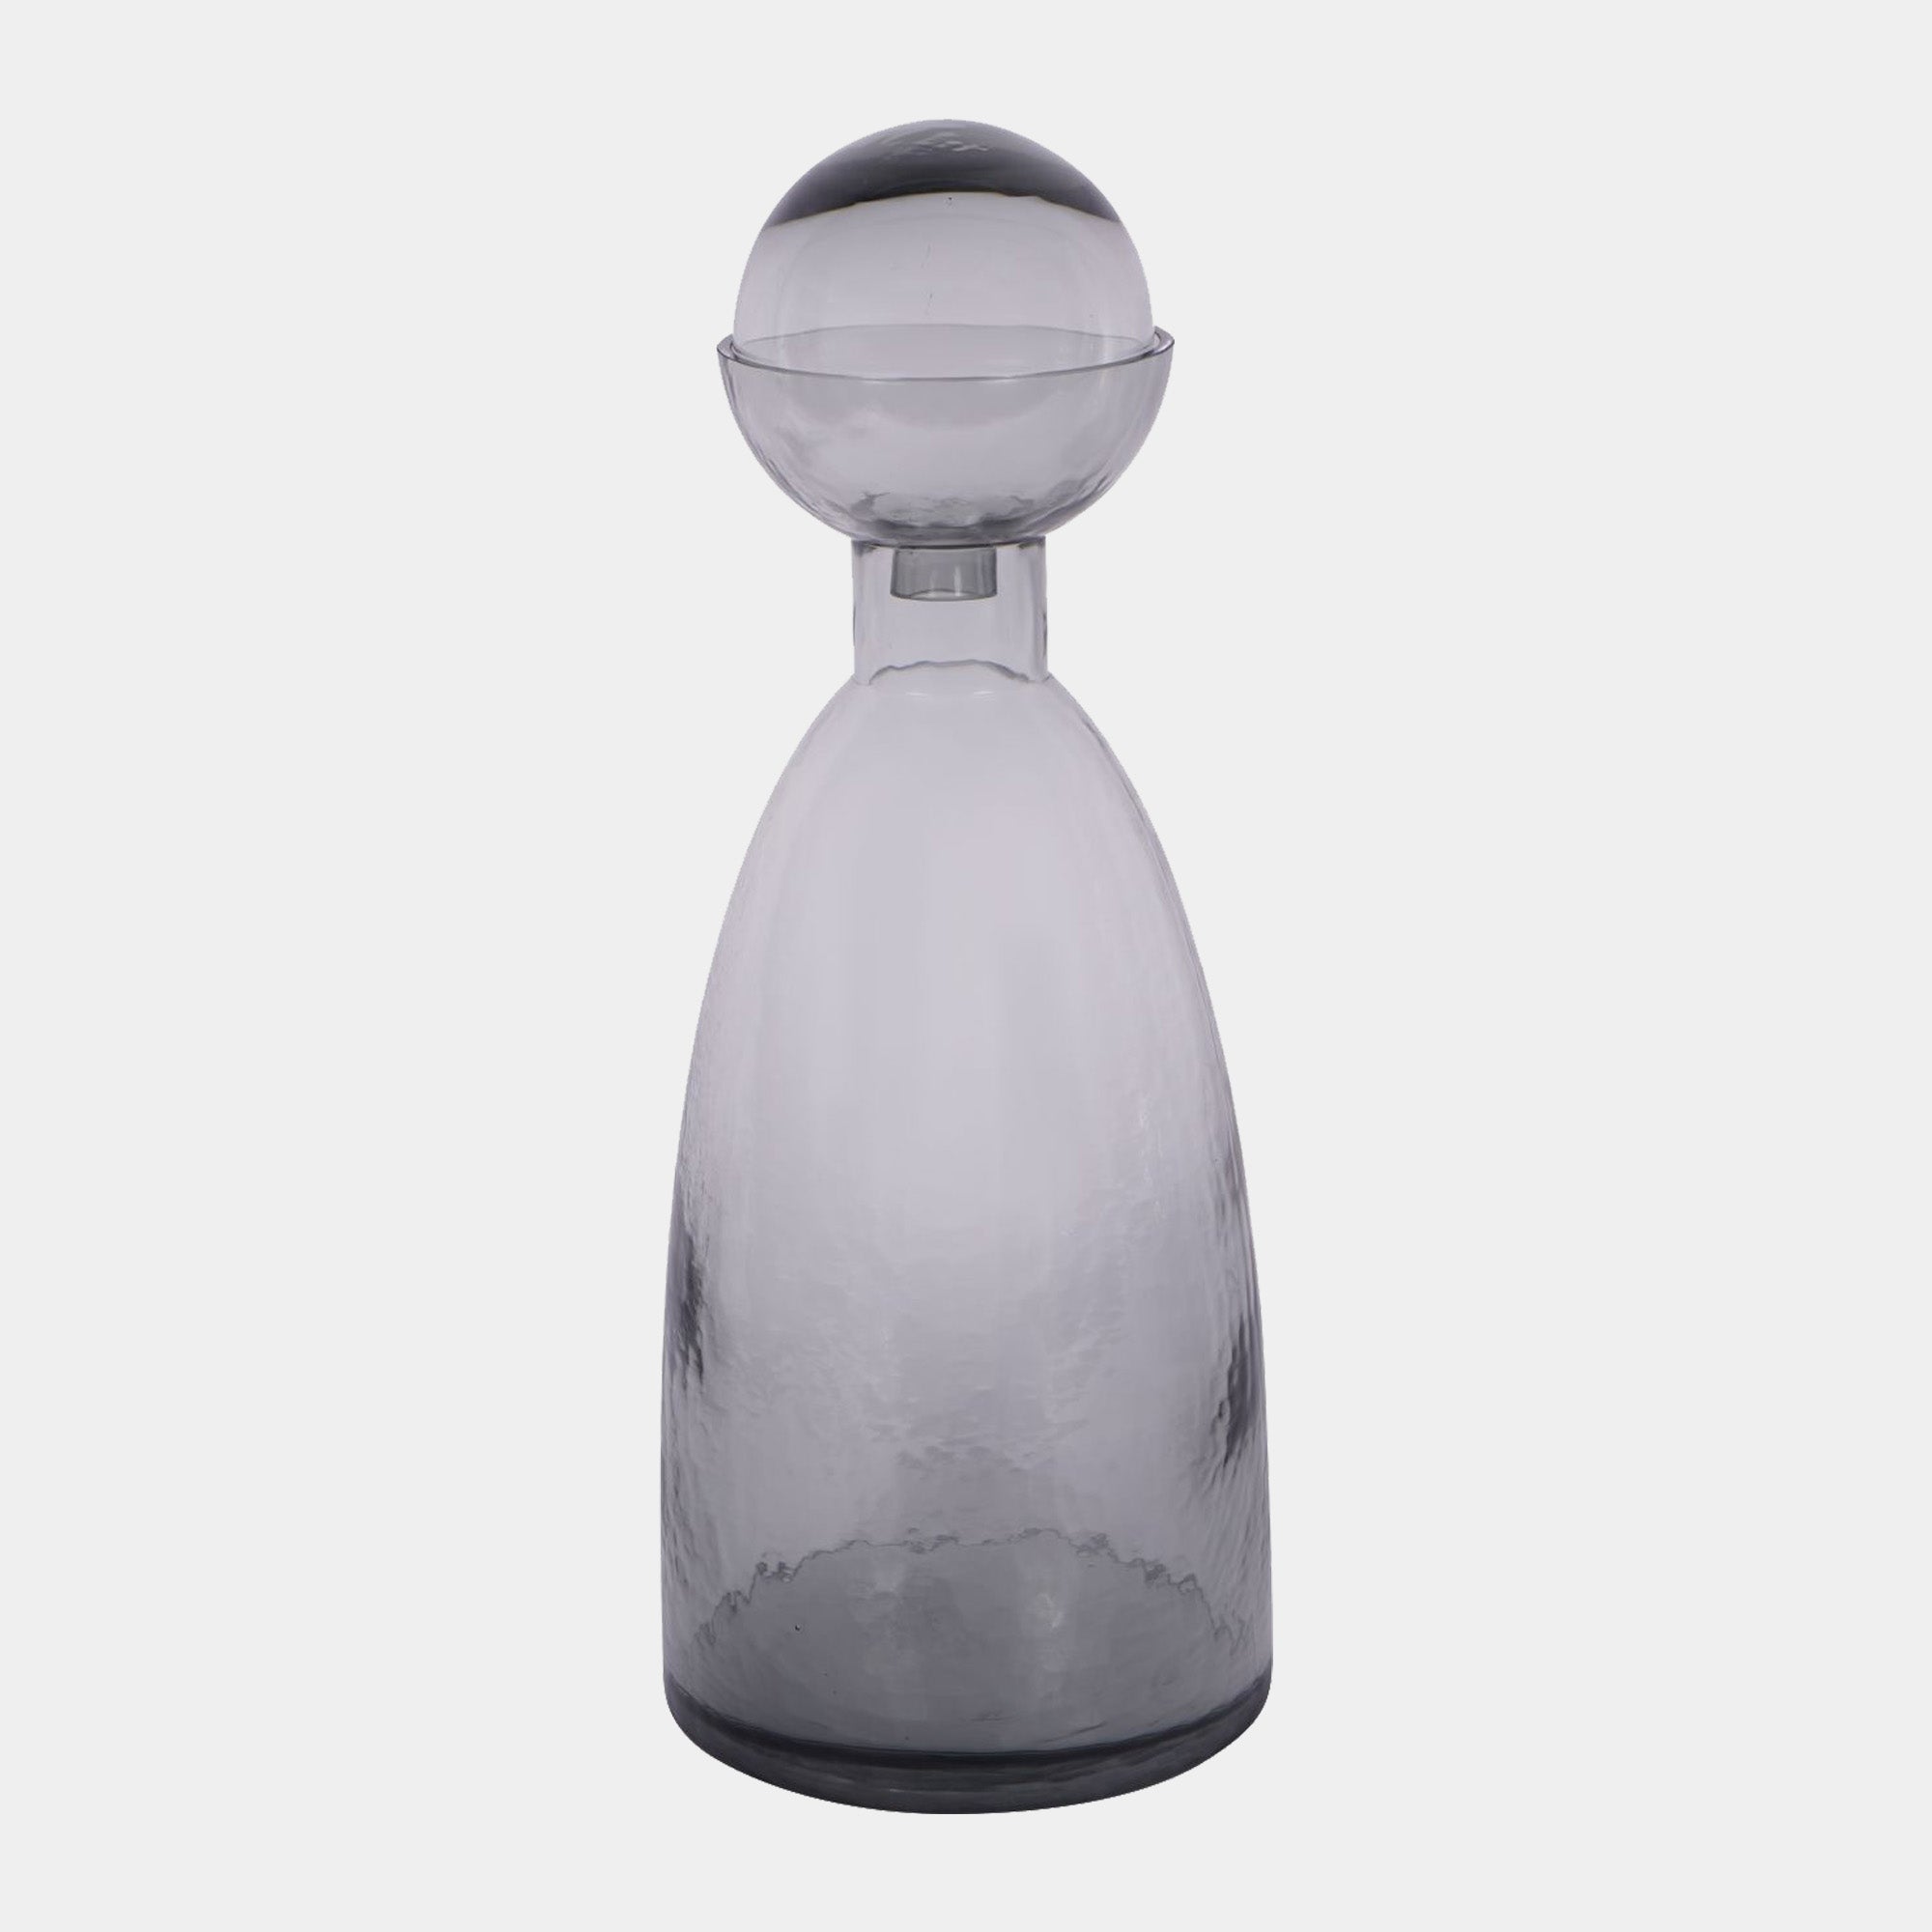 Vitrum - Smoked Bottle Vase Large